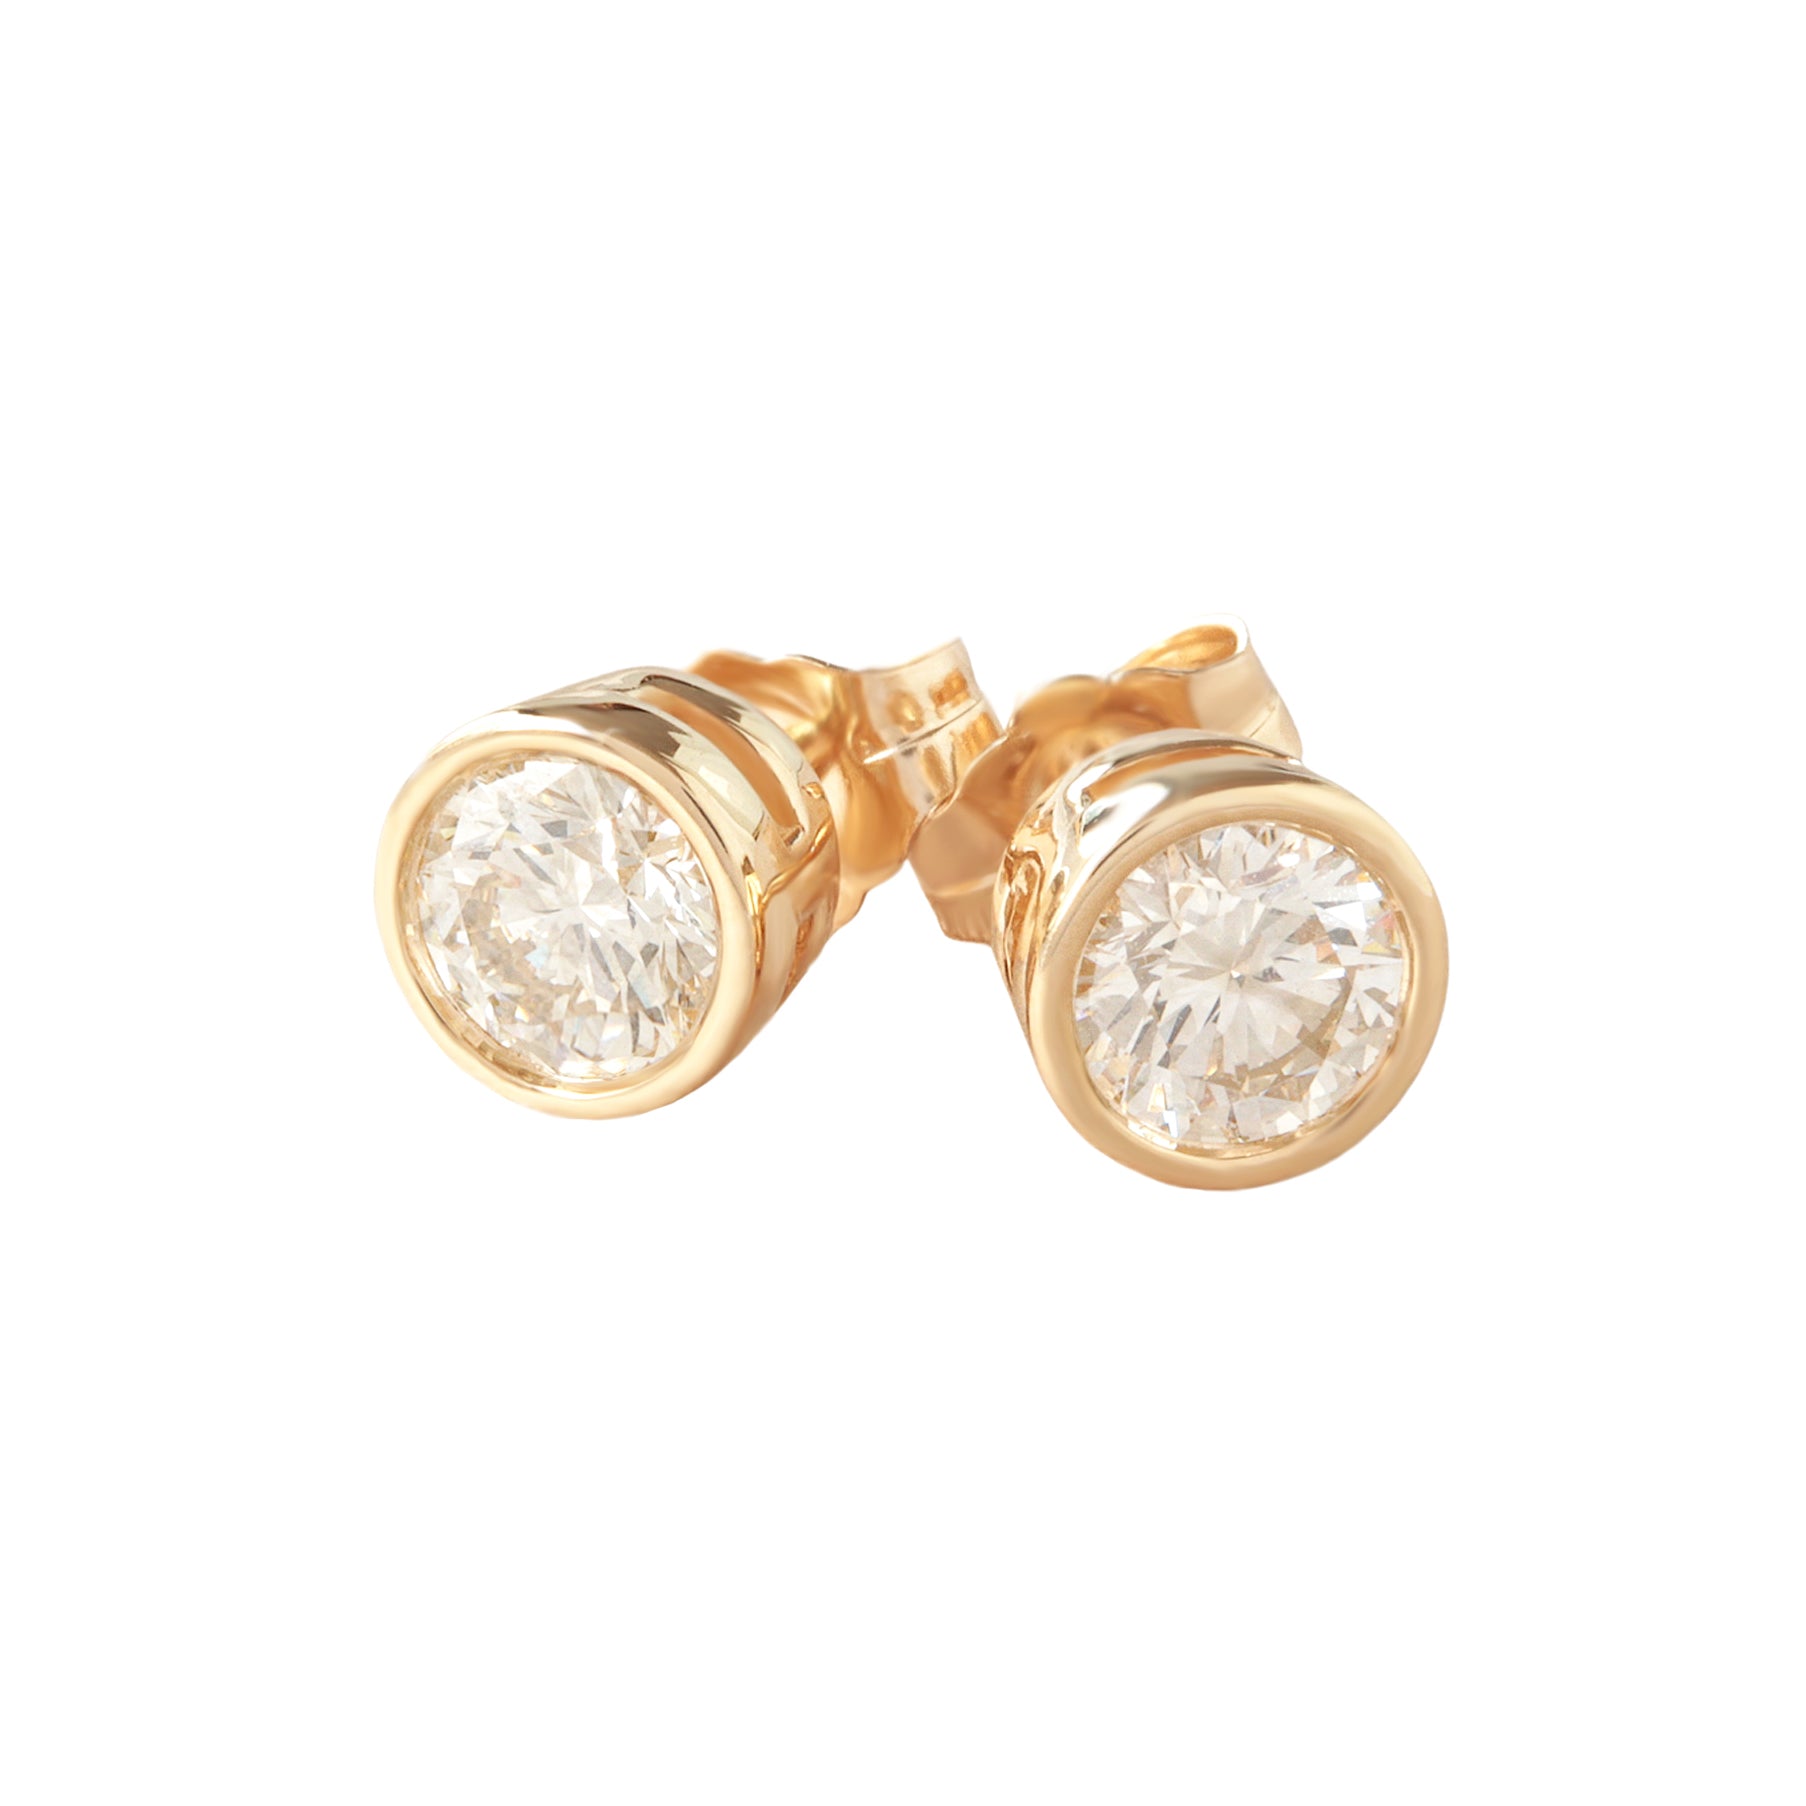 Round bezel diamond dainty stud earrings